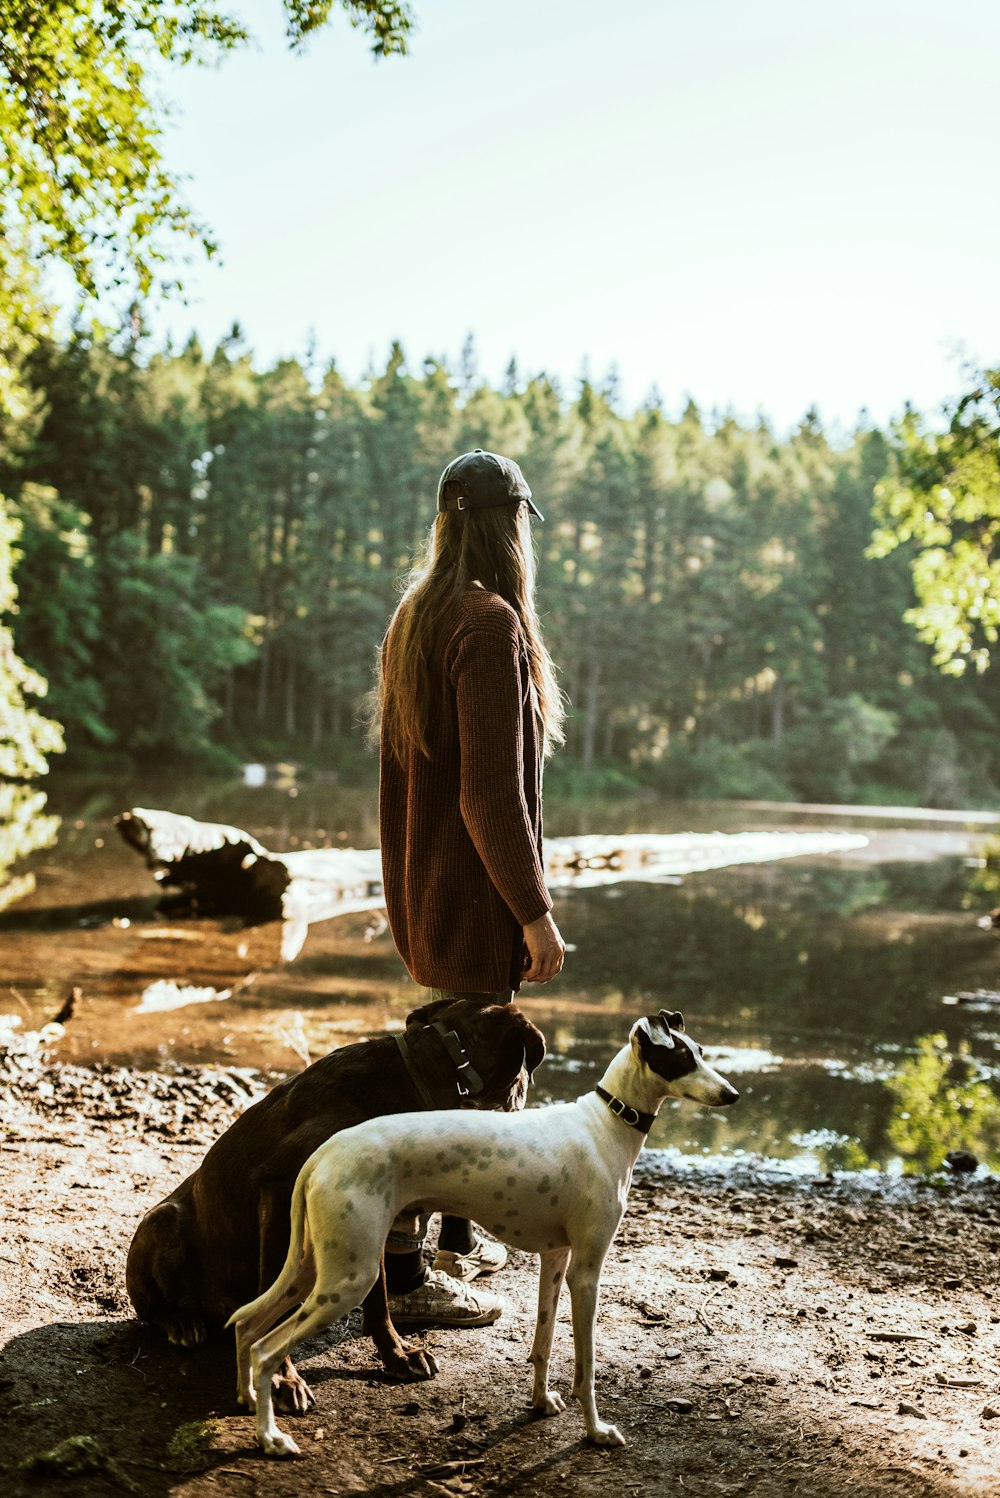 mulher na jaqueta marrom sentada ao lado do cão de pelagem curta branca e marrom durante o dia